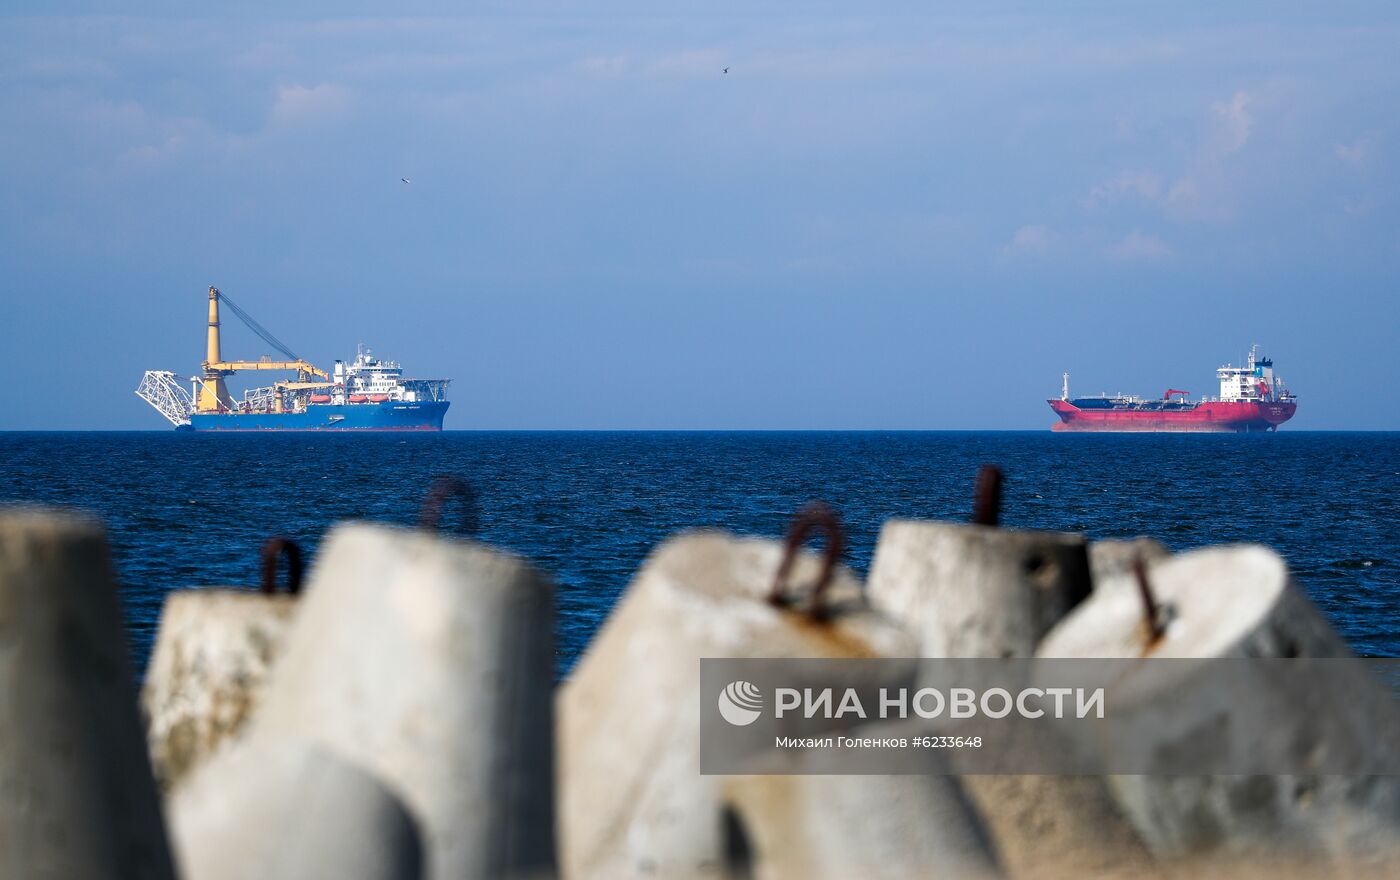 Прибытие трубоукладчика "Академик Черский" в порт Калининграда